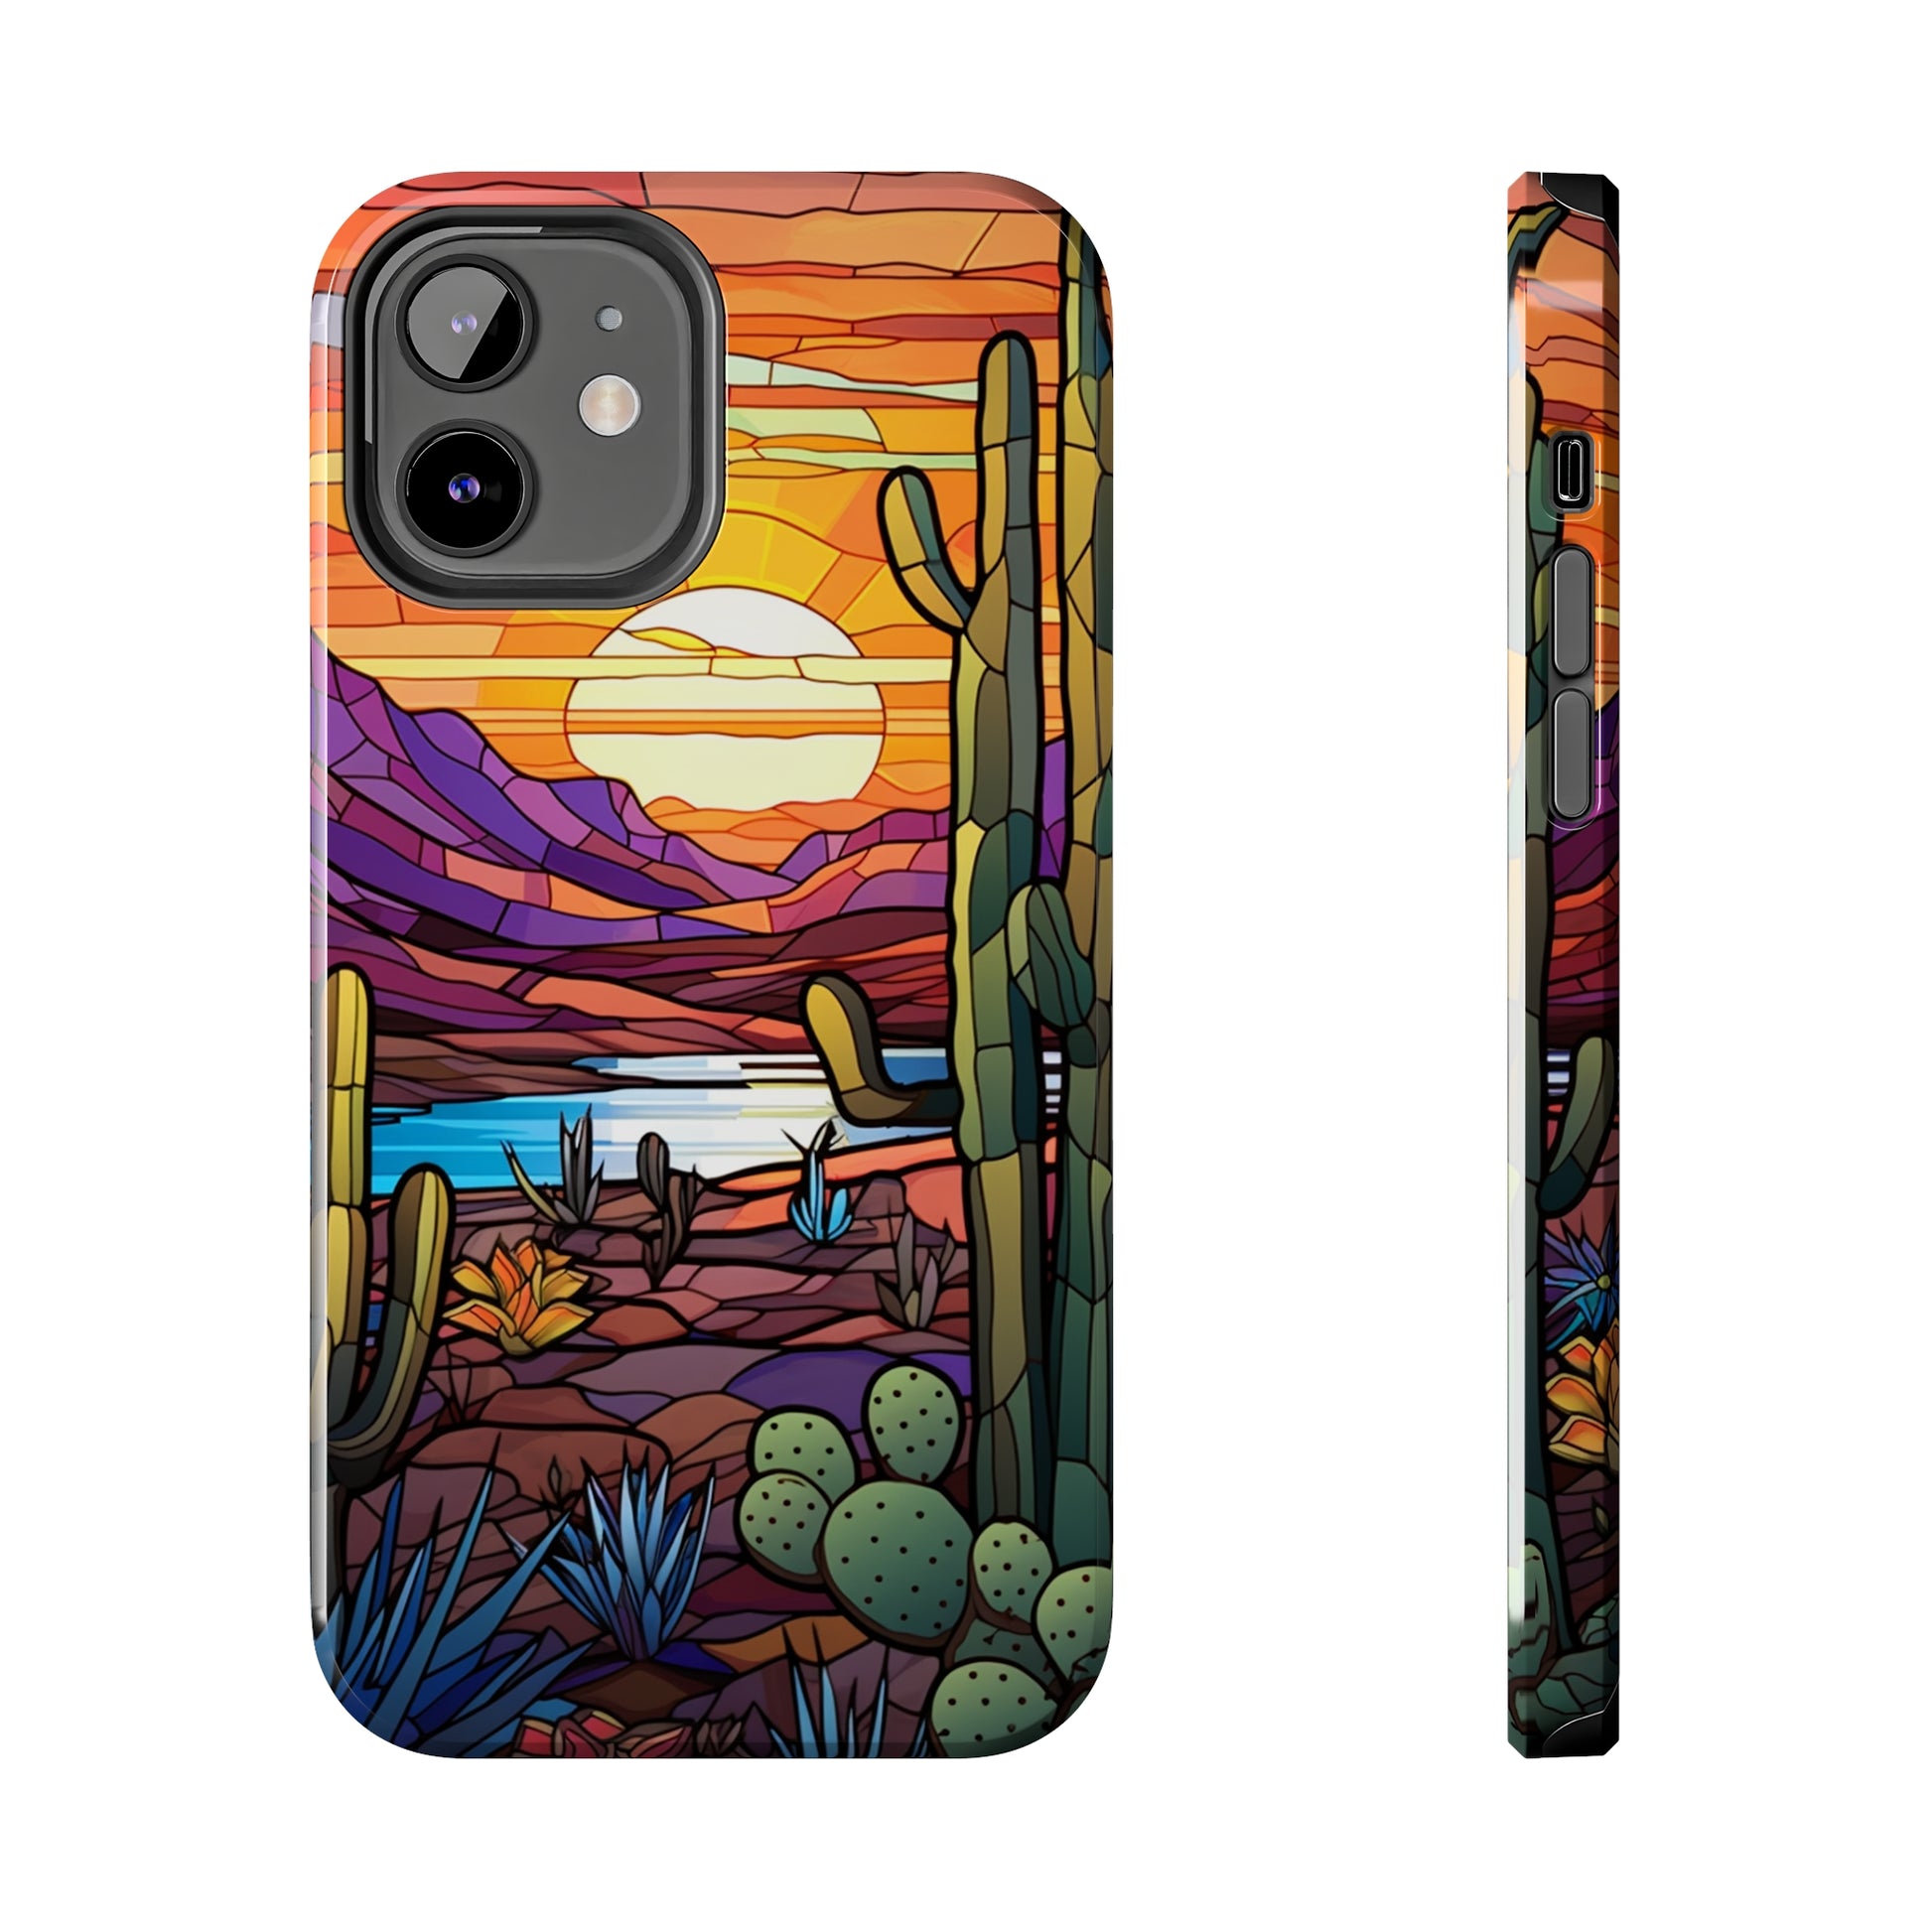 Cactus iPhone 8 Cover